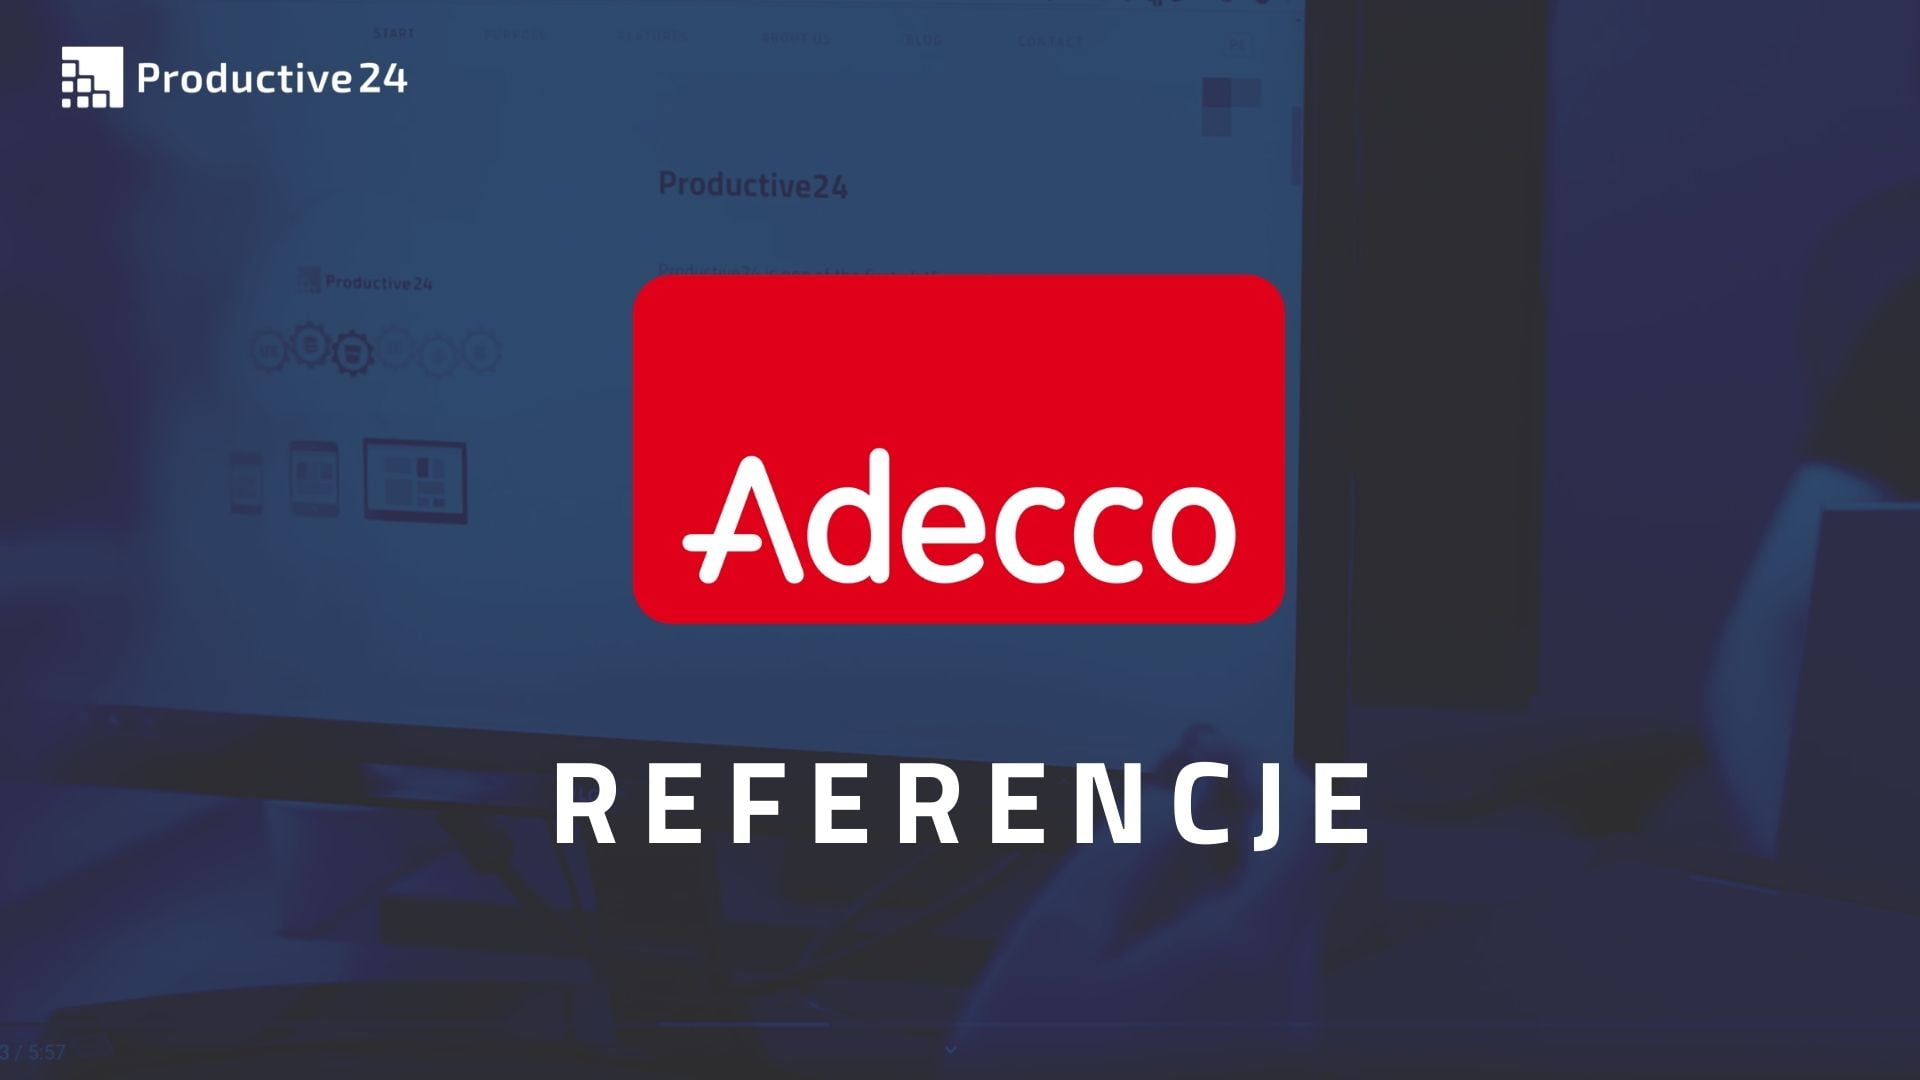 Adecco Group cyfryzuje się z Productive24